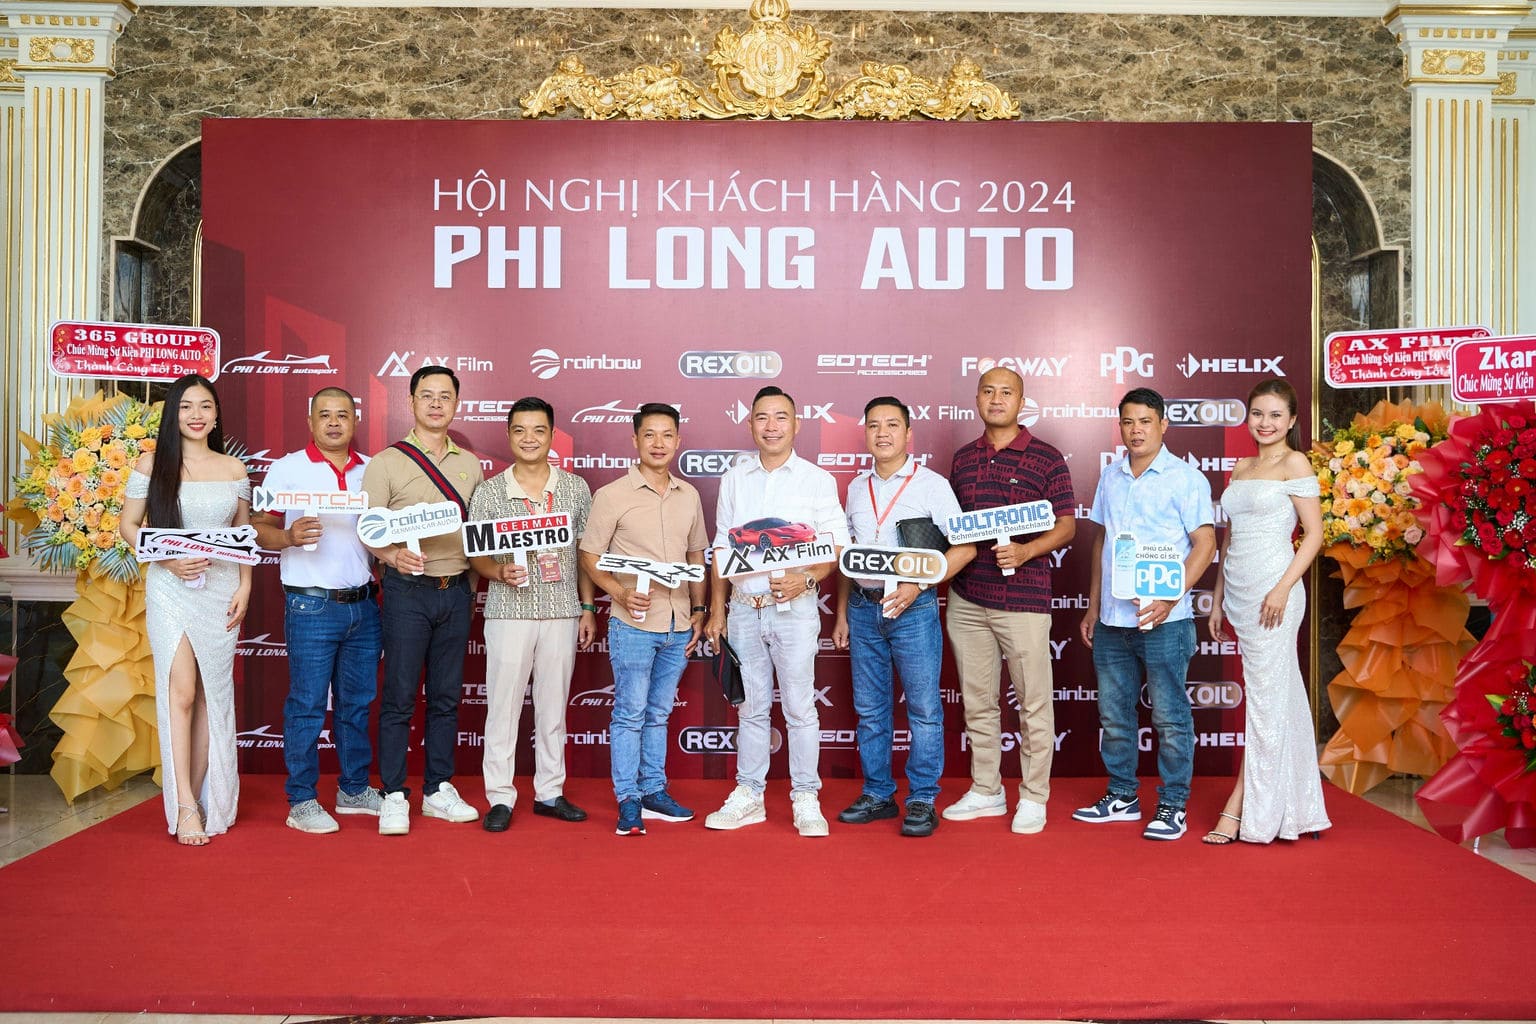 HOI NGHI KHACH HANG PHI LONG AUTO 2024 33 | Phi Long Auto